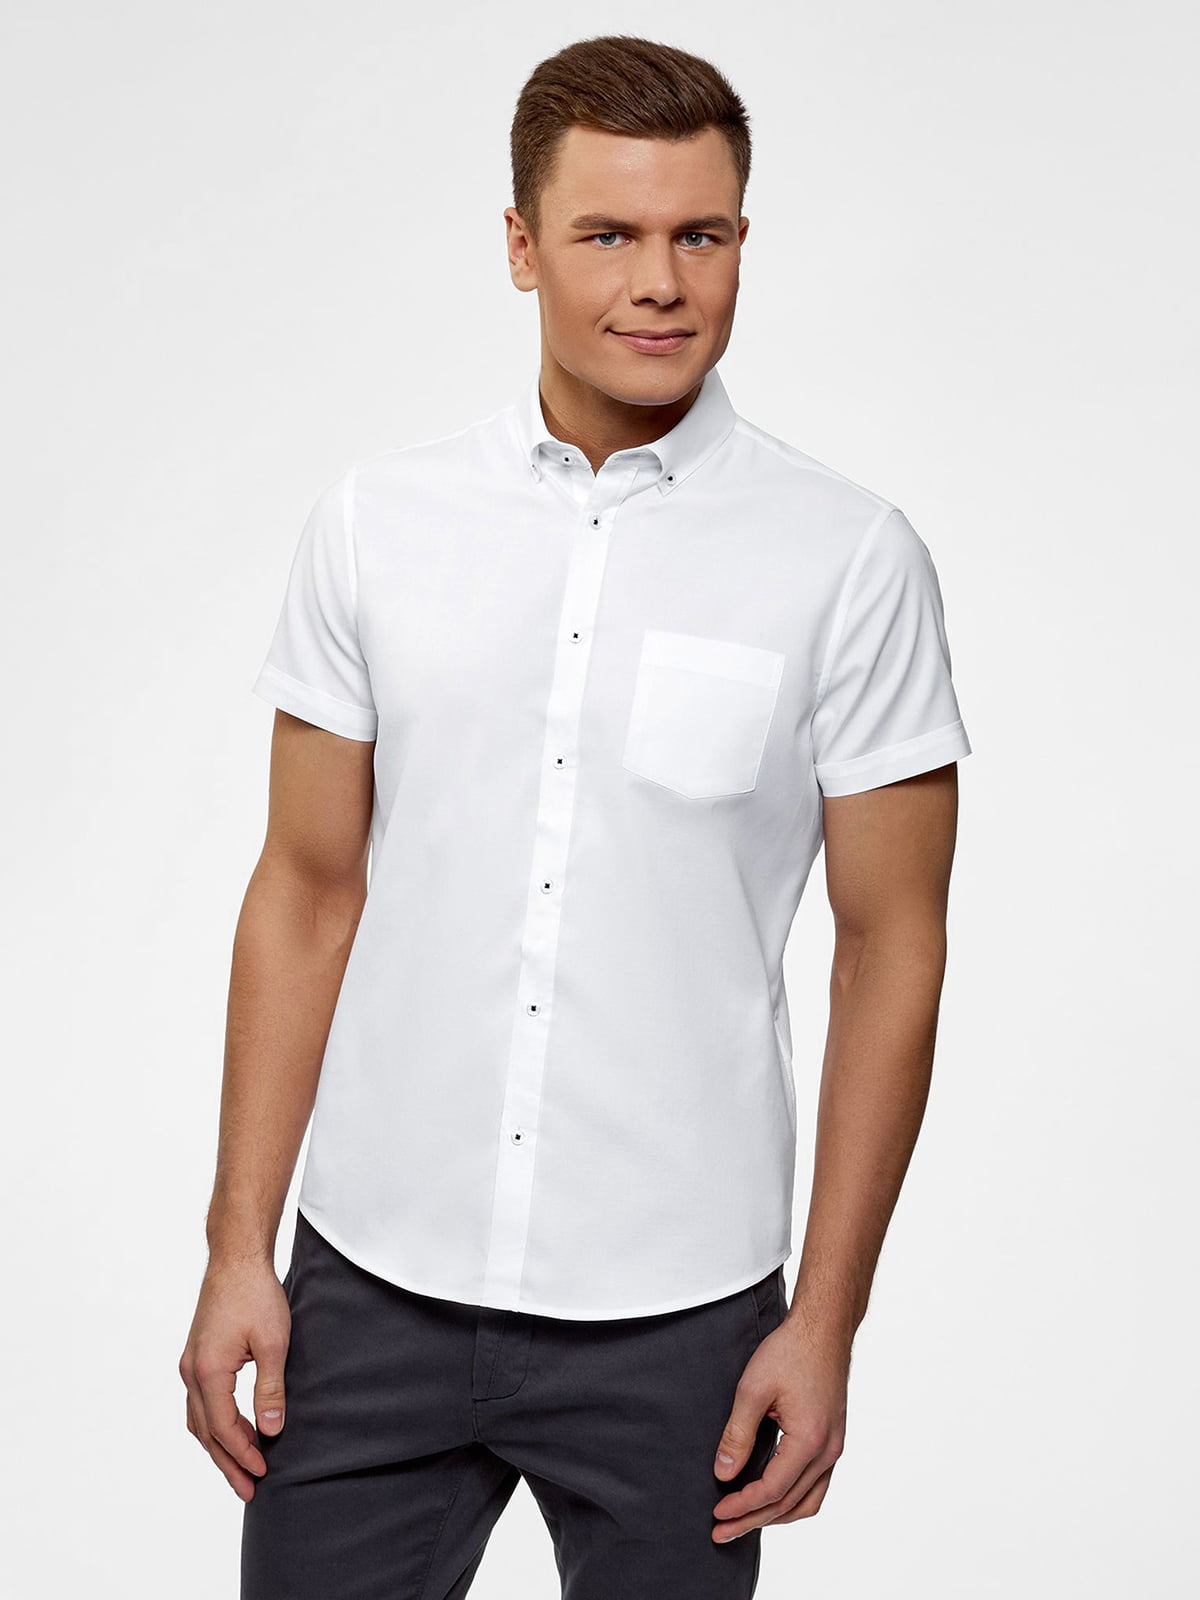 Купить белую рубашку с коротким рукавом. Рубашка. Рубашка мужская. Белая рубашка. Белая рубашка с коротким рукавом.